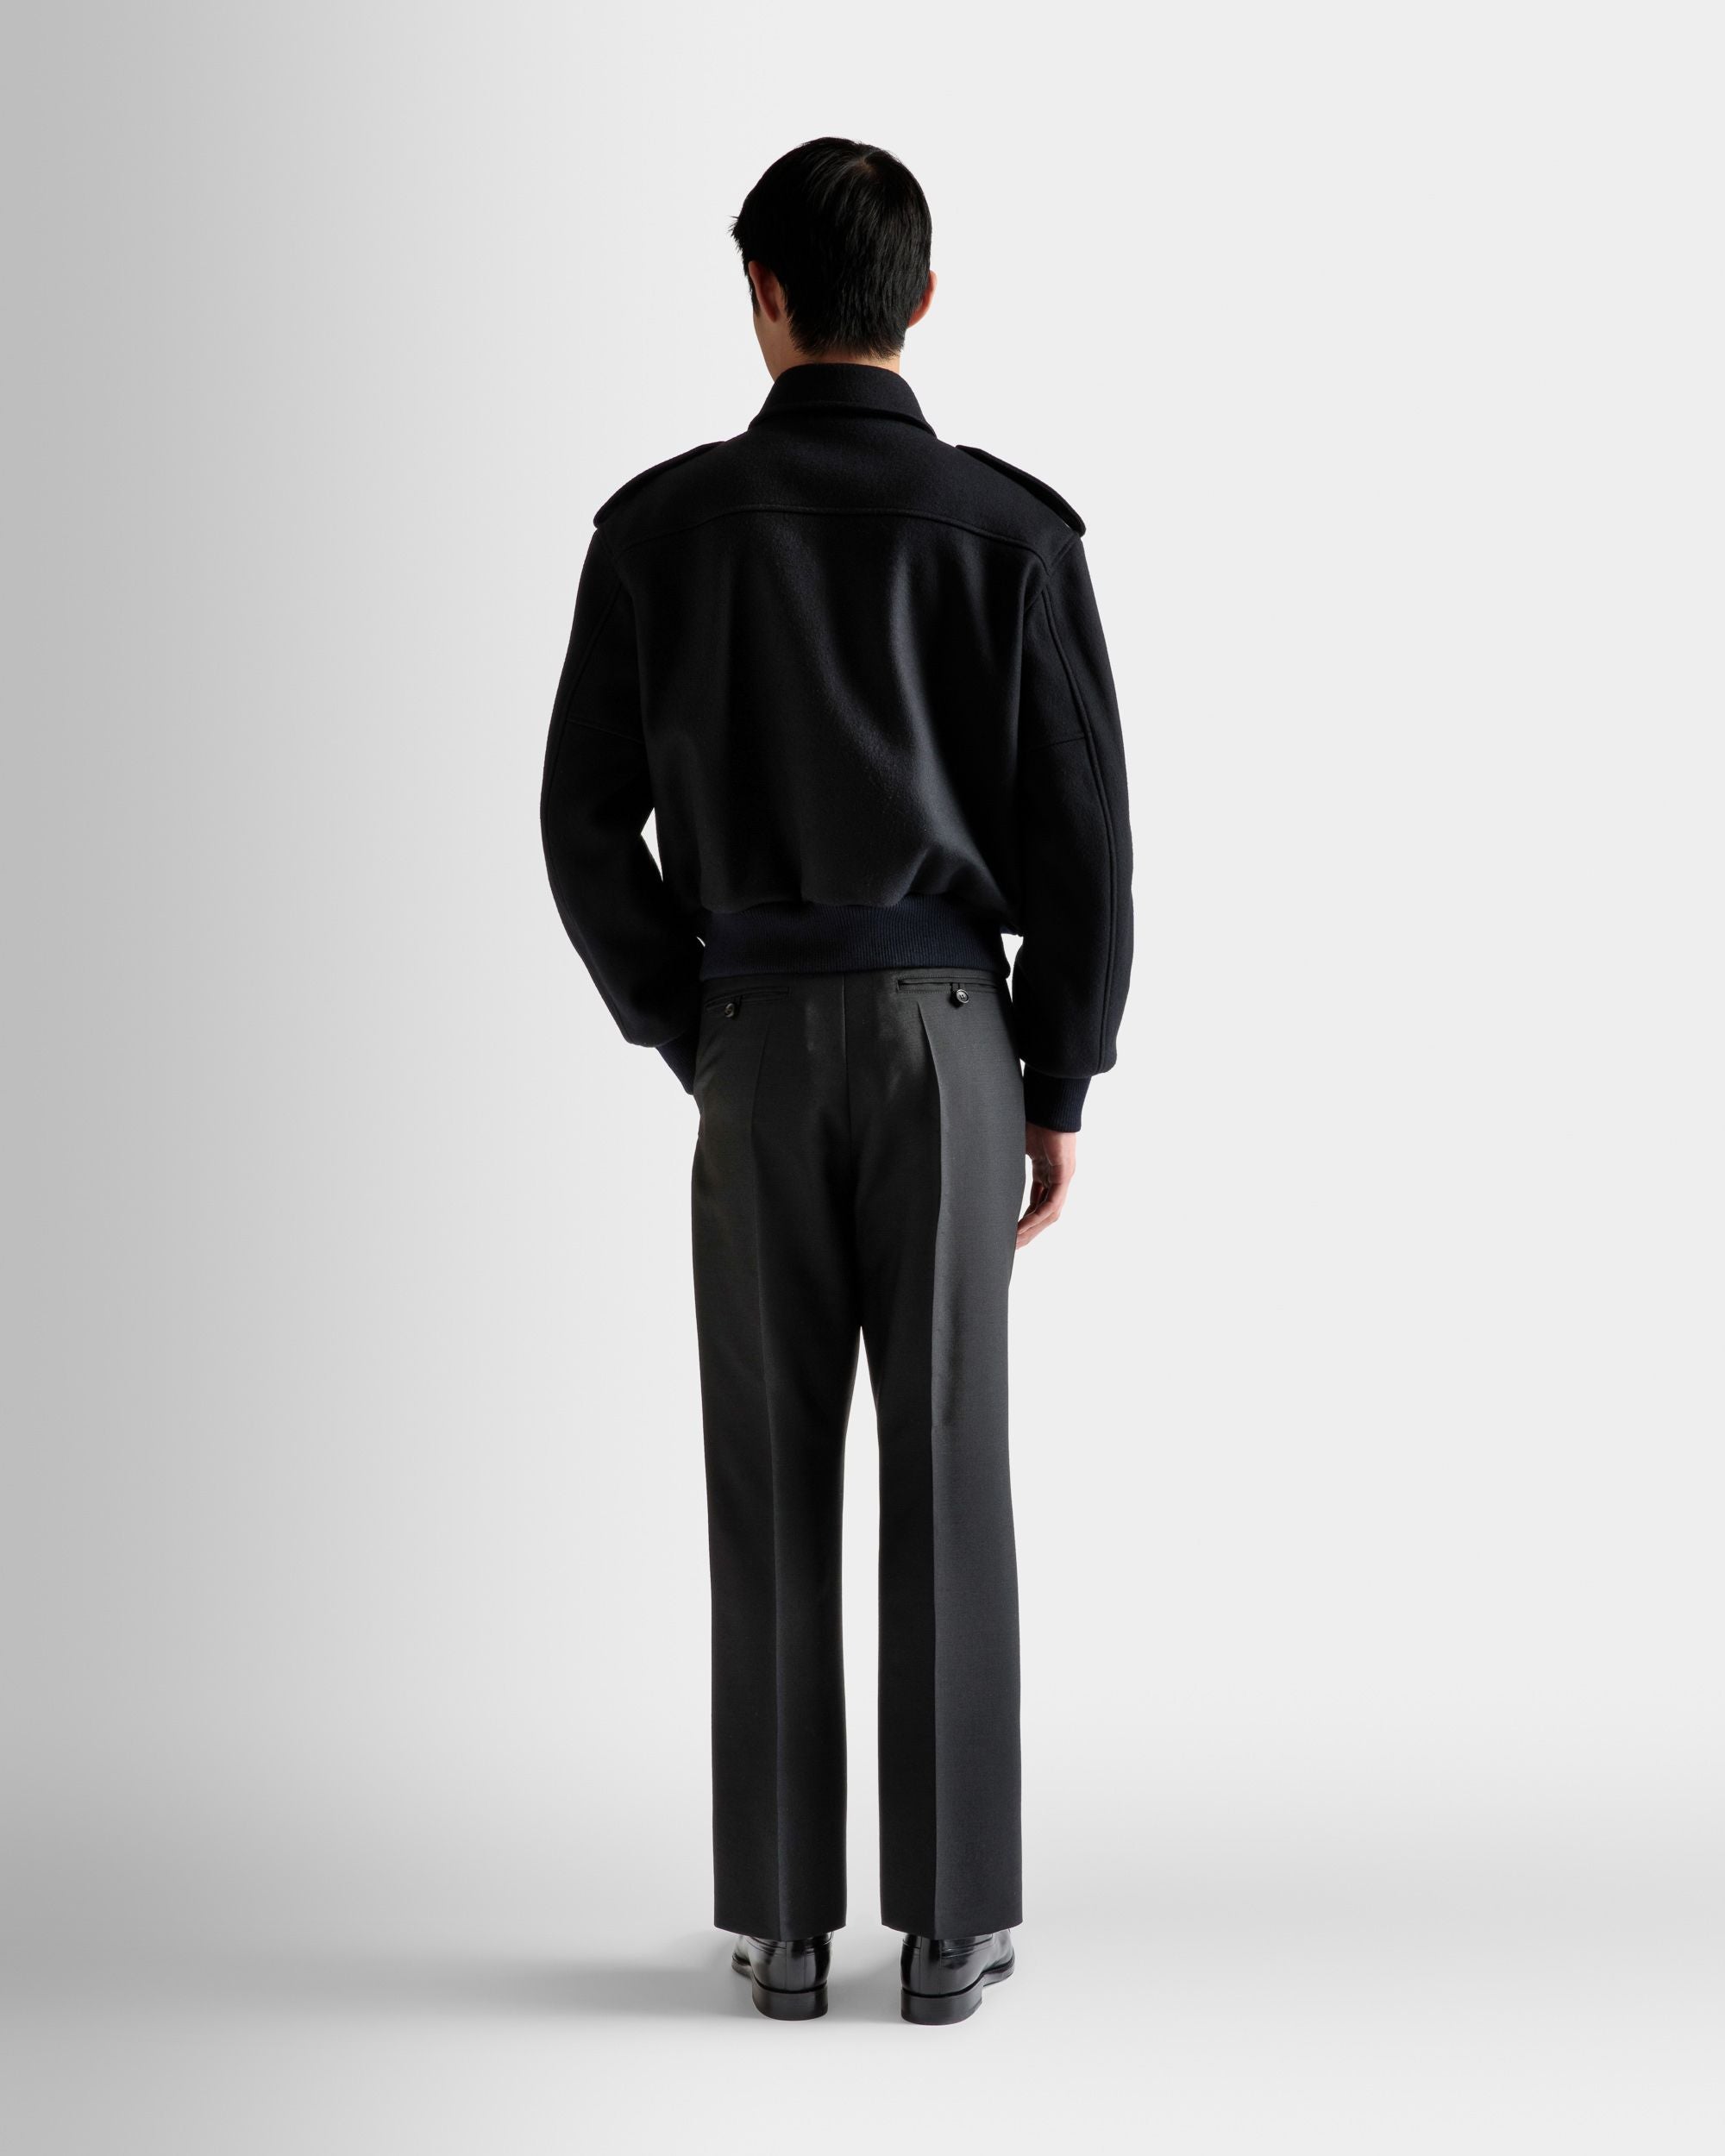 Bomberjacke | Jacken und Mäntel für Herren | Marineblaues Wollgemisch | Bally | Model getragen Rückseite